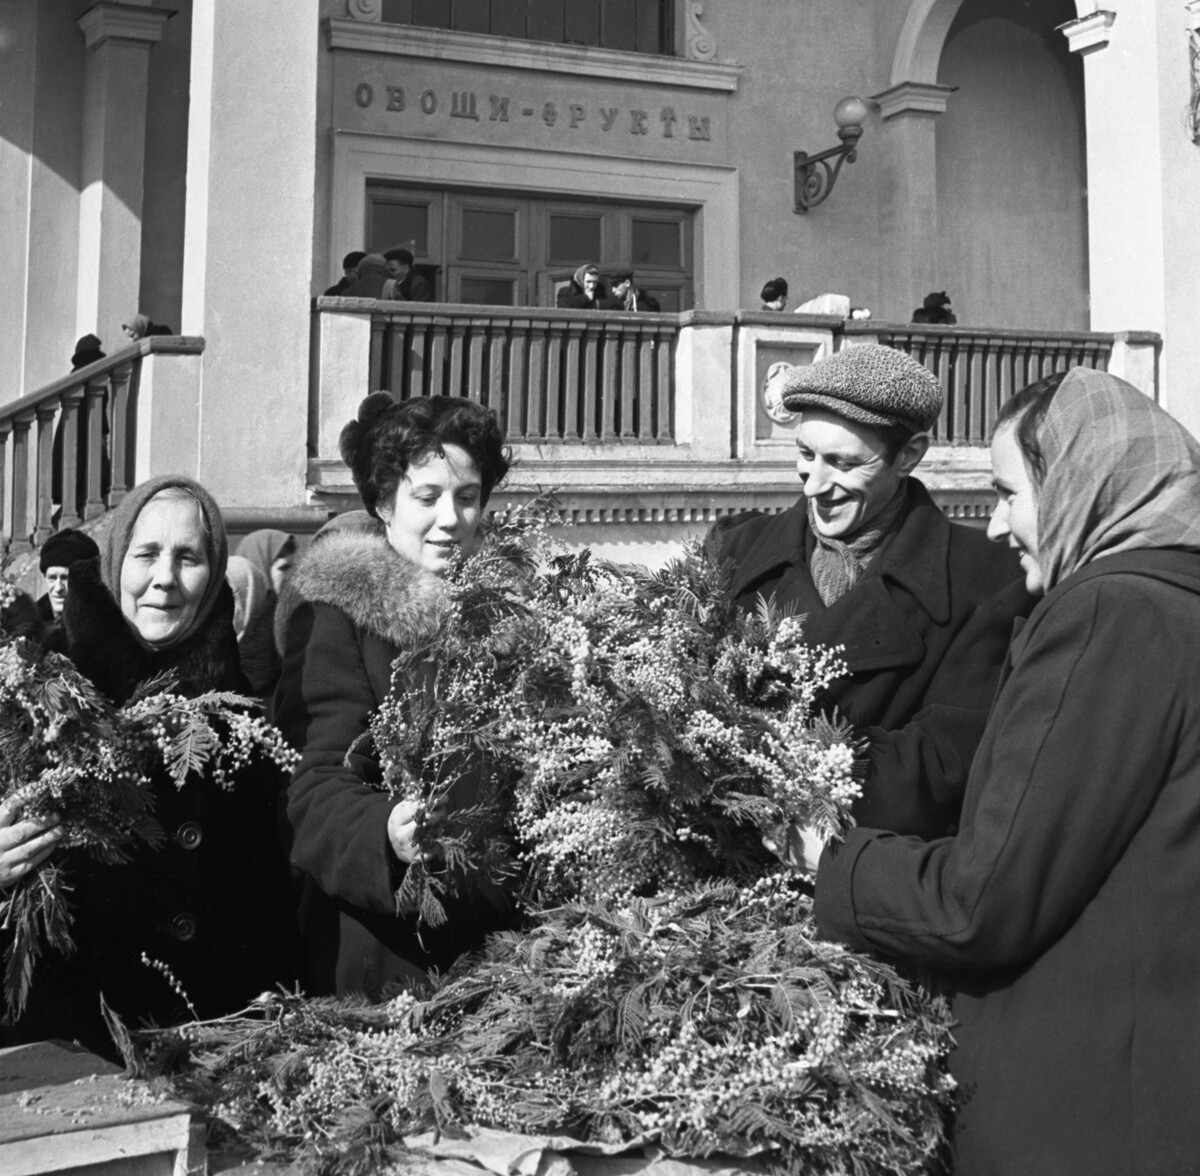 Venda de mimosas no Dia da Mulher em Moscou, 1956.